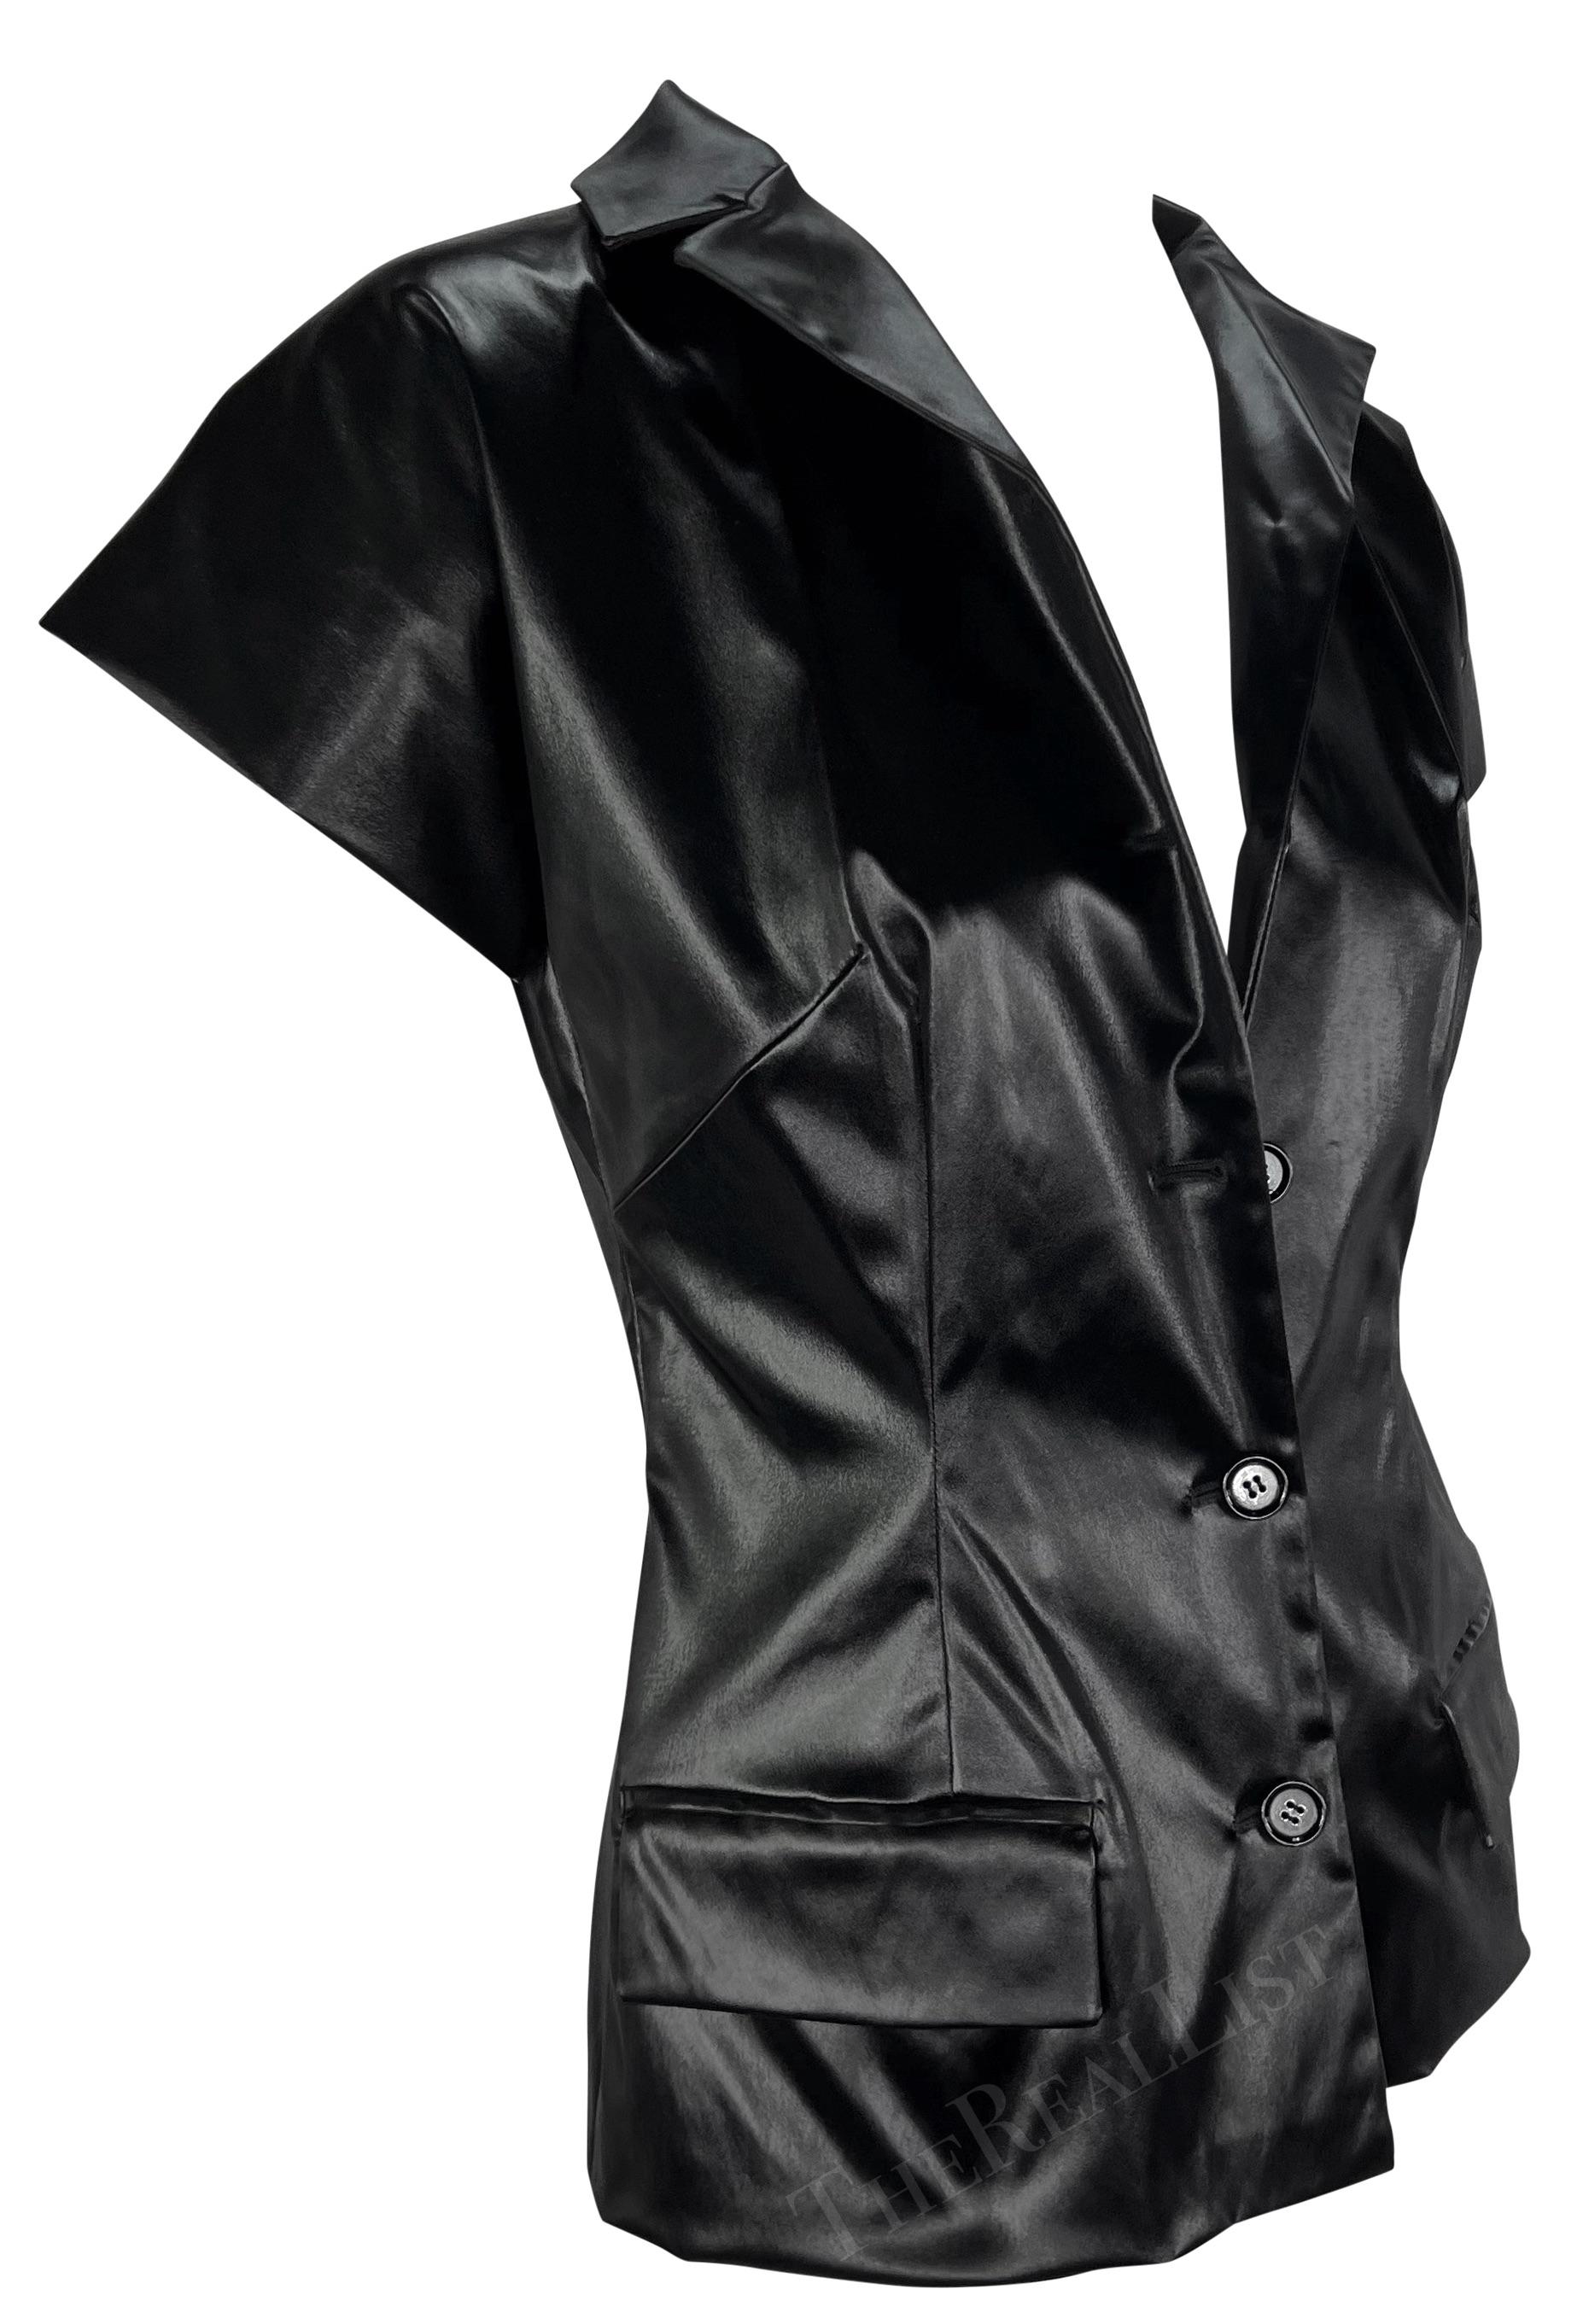 S/S 1999 Dolce & Gabbana Runway Wet Look Short Sleeve Black Jacket Top For Sale 3